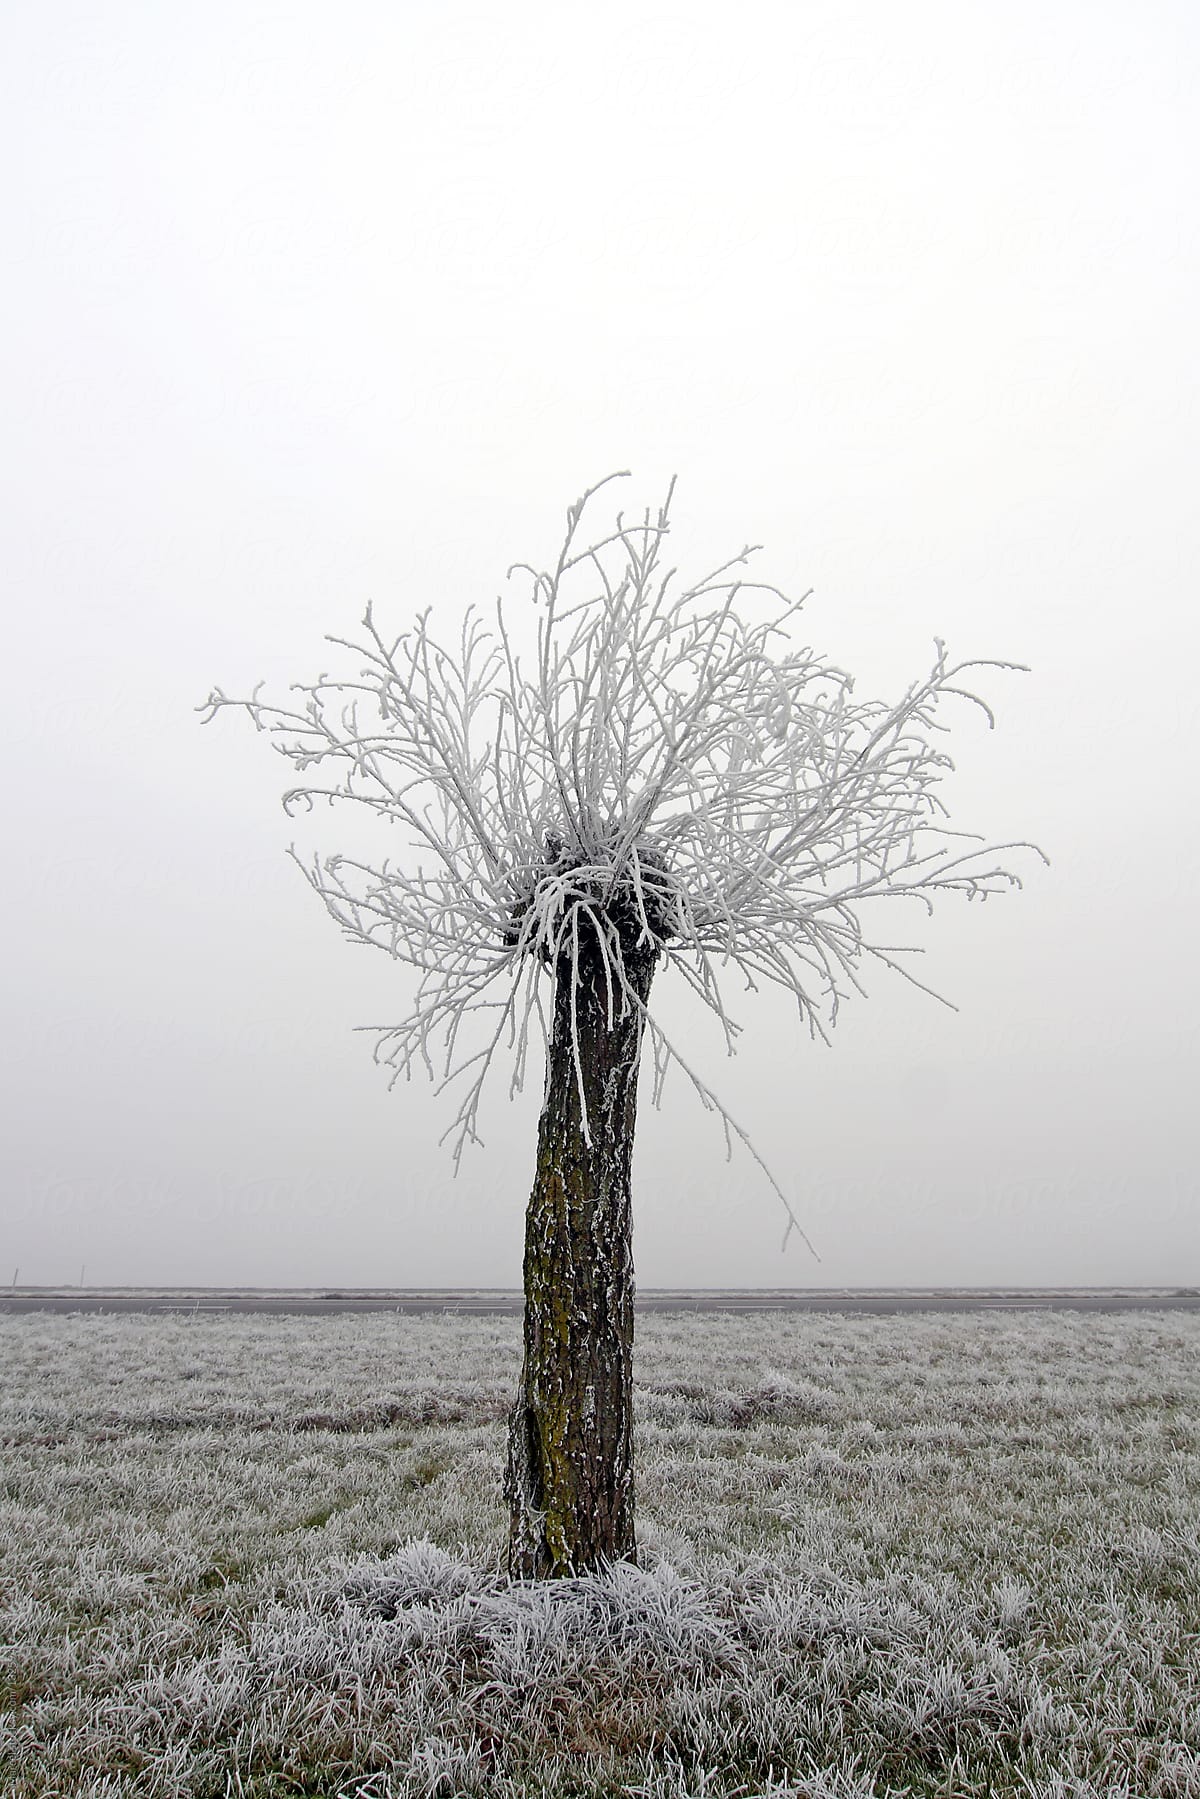 Pollarded willow in foggy field